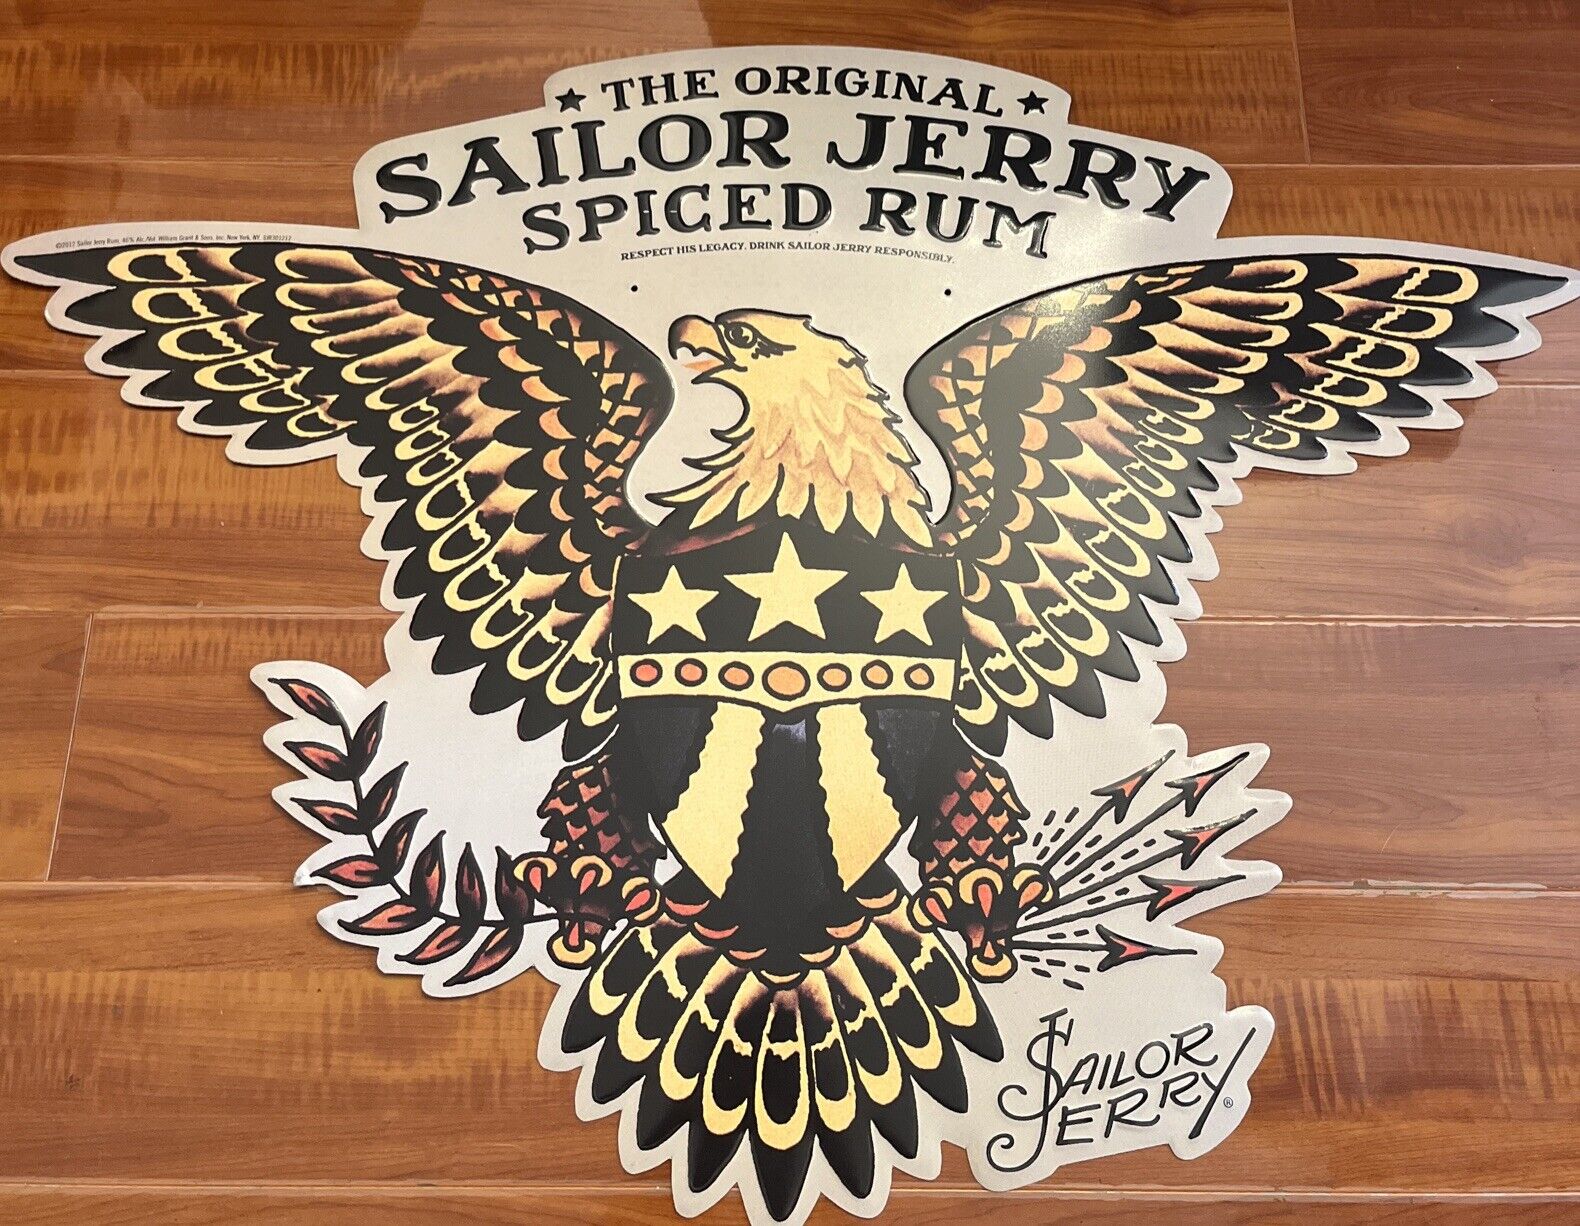 24 x 33 THE ORIGINAL Sailor Jerry Spiced Rum Metal Tin Sign Advertising Display